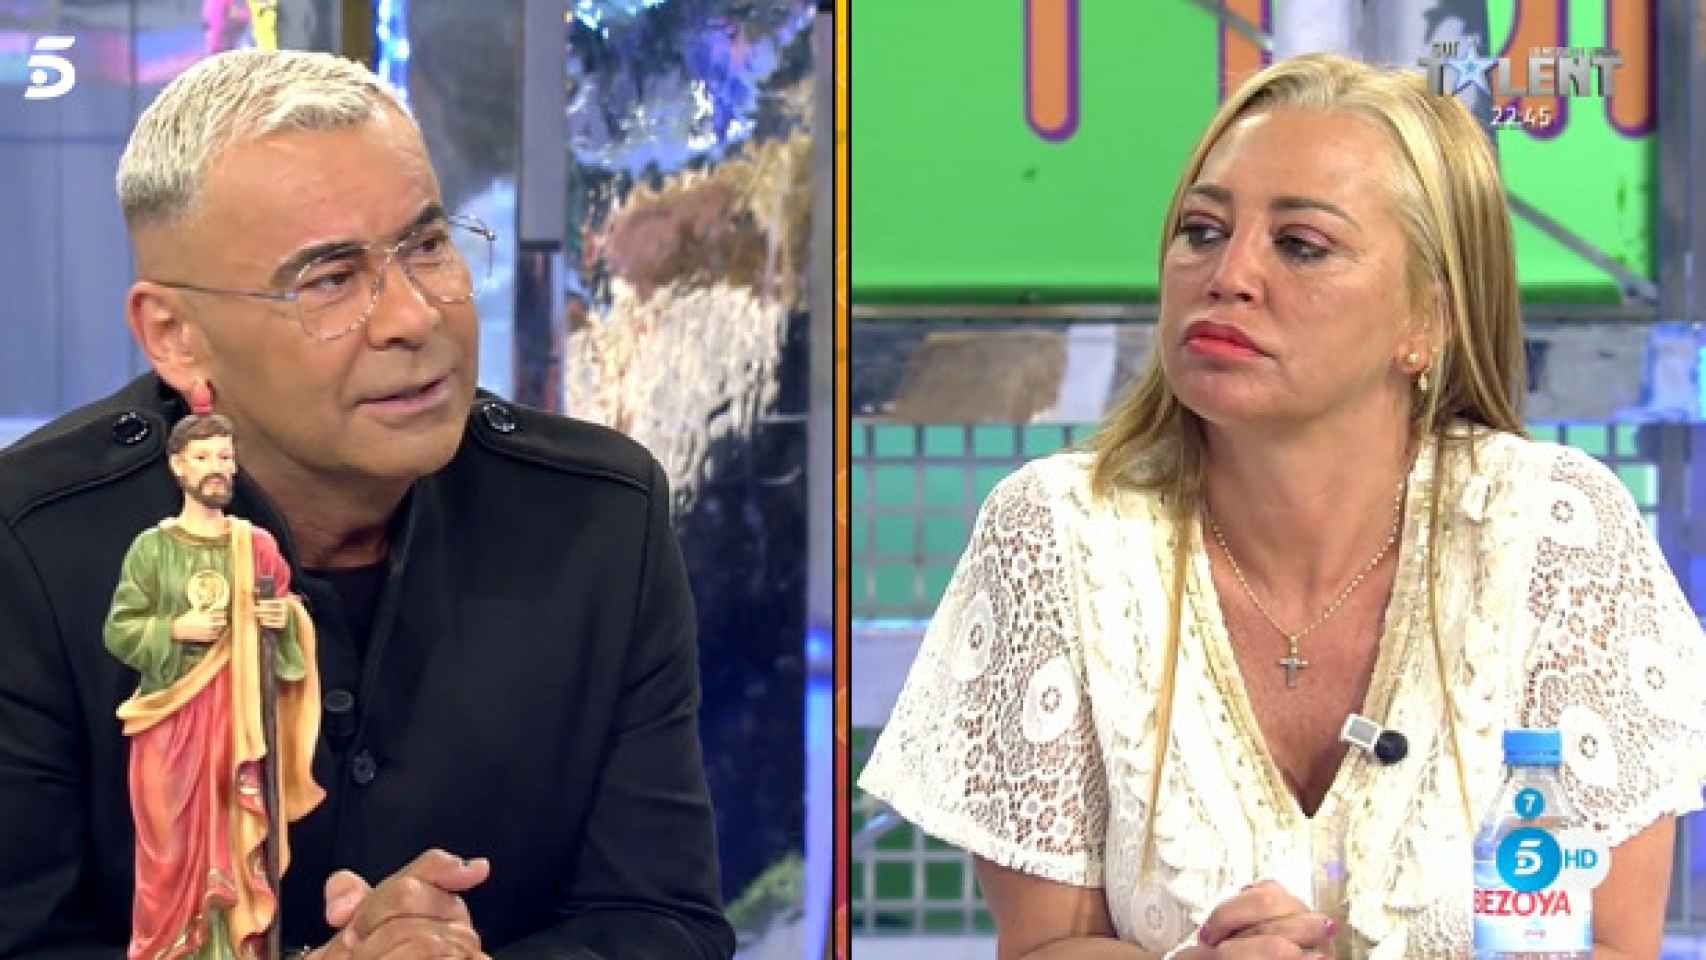 Jorge Javier Vázquez y Belén Esteban en 'Sálvame' (Telecinco)